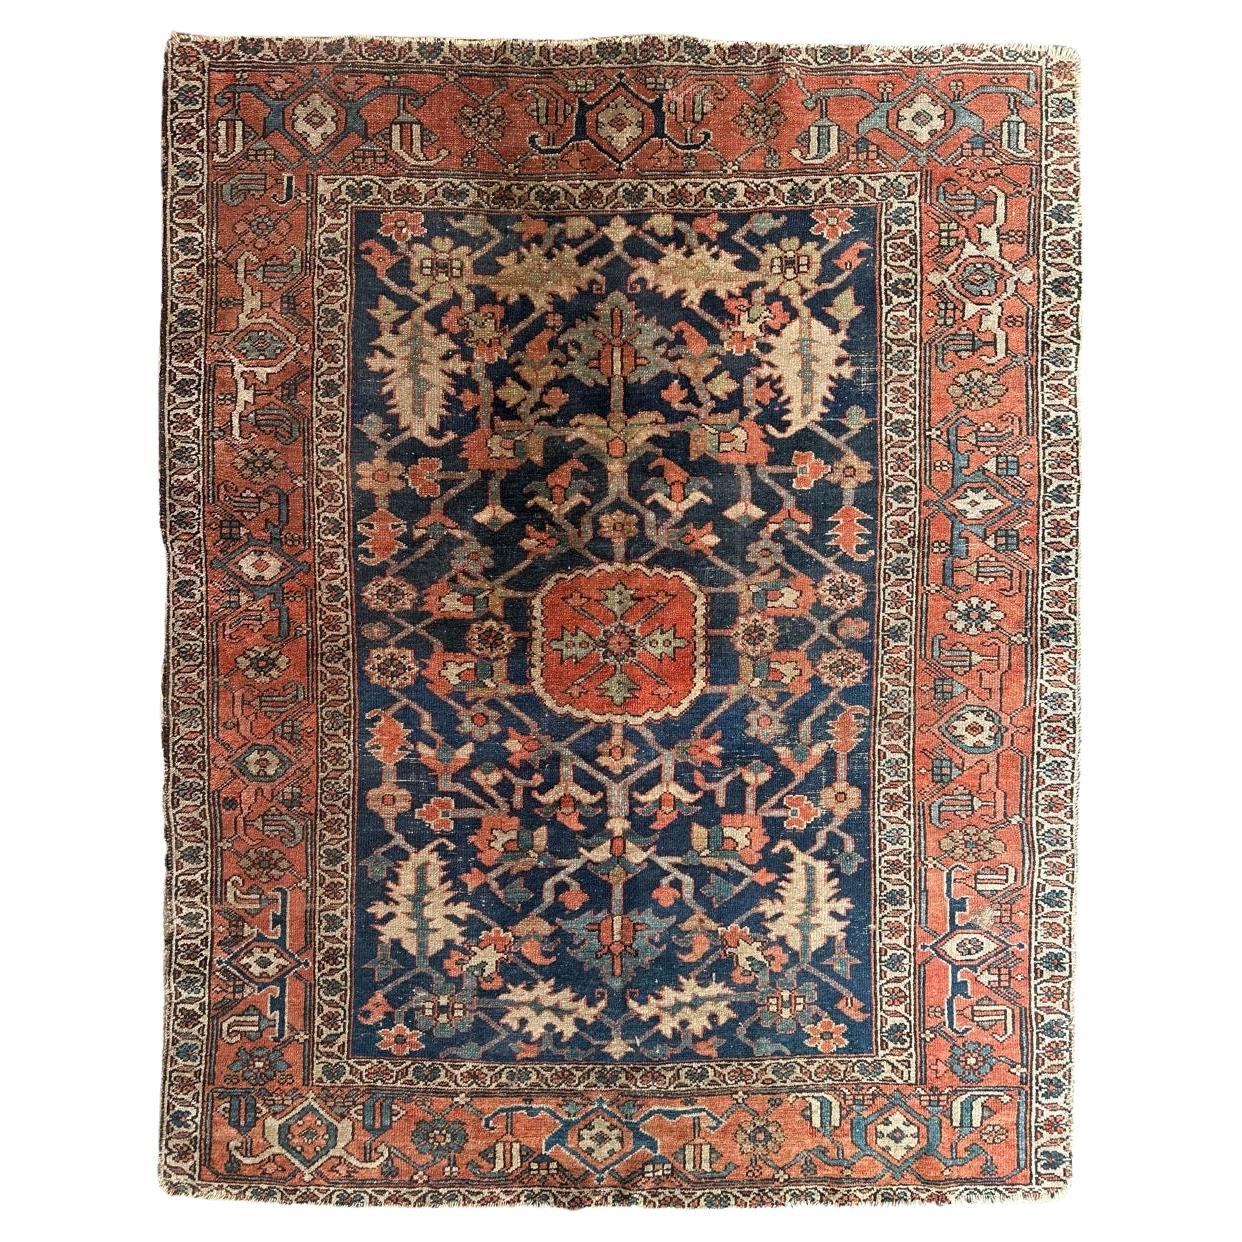 Merveilleux tapis carré antique de Heriz